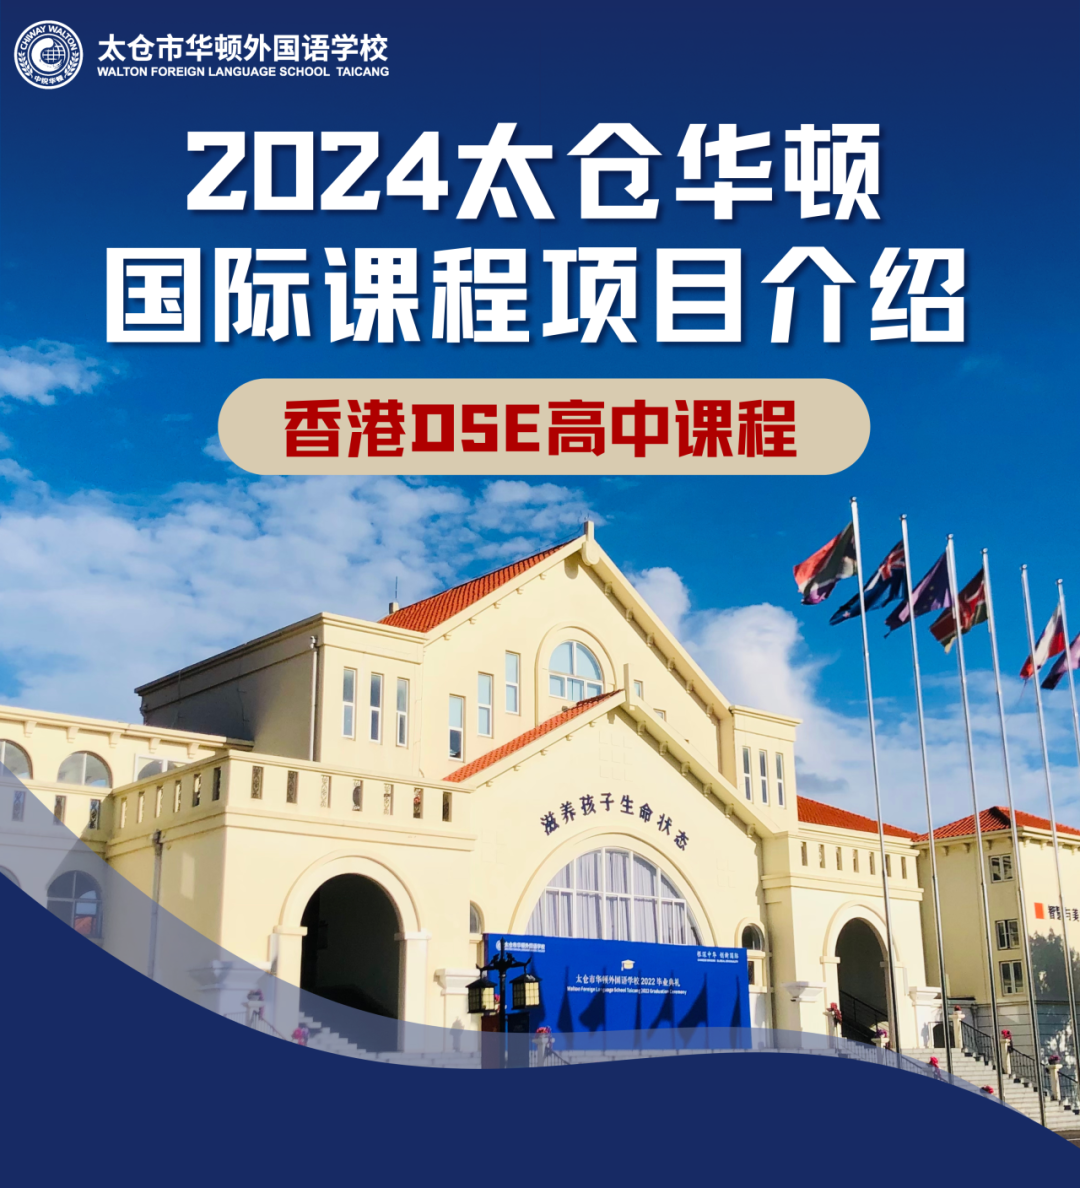 国际高中部 | 香港DSE高中课程介绍